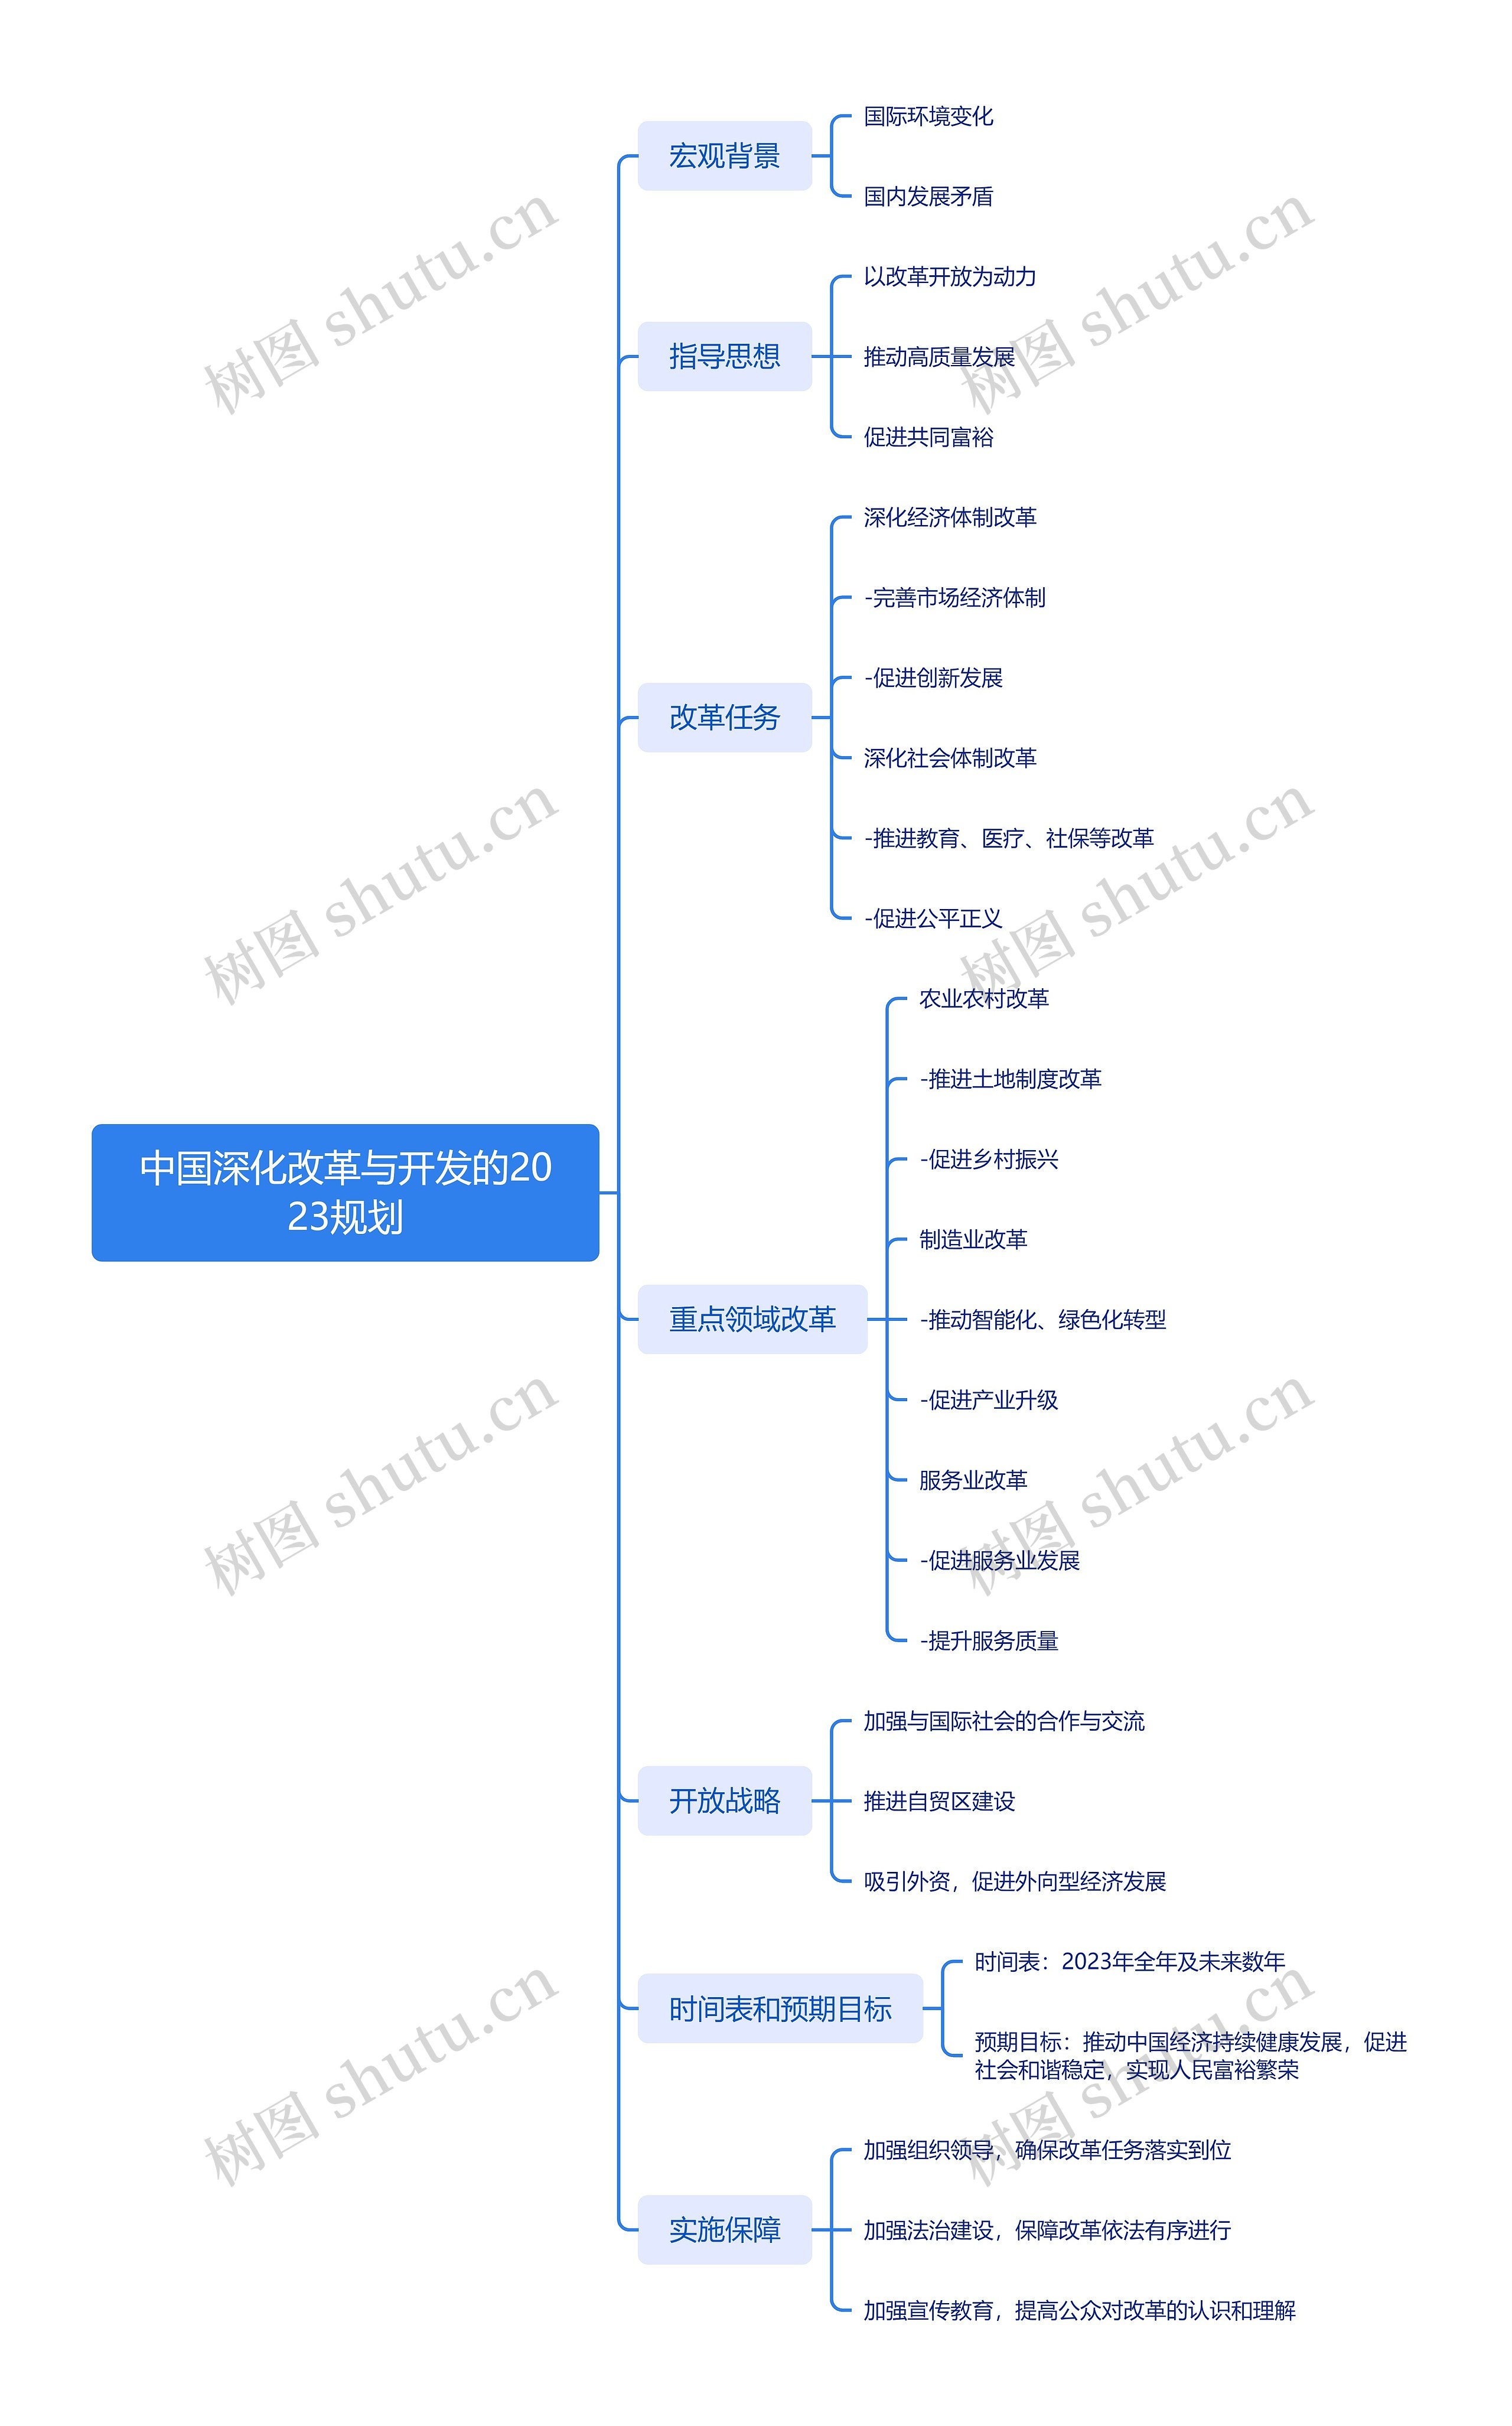 中国深化改革与开发的2023规划_副本思维导图